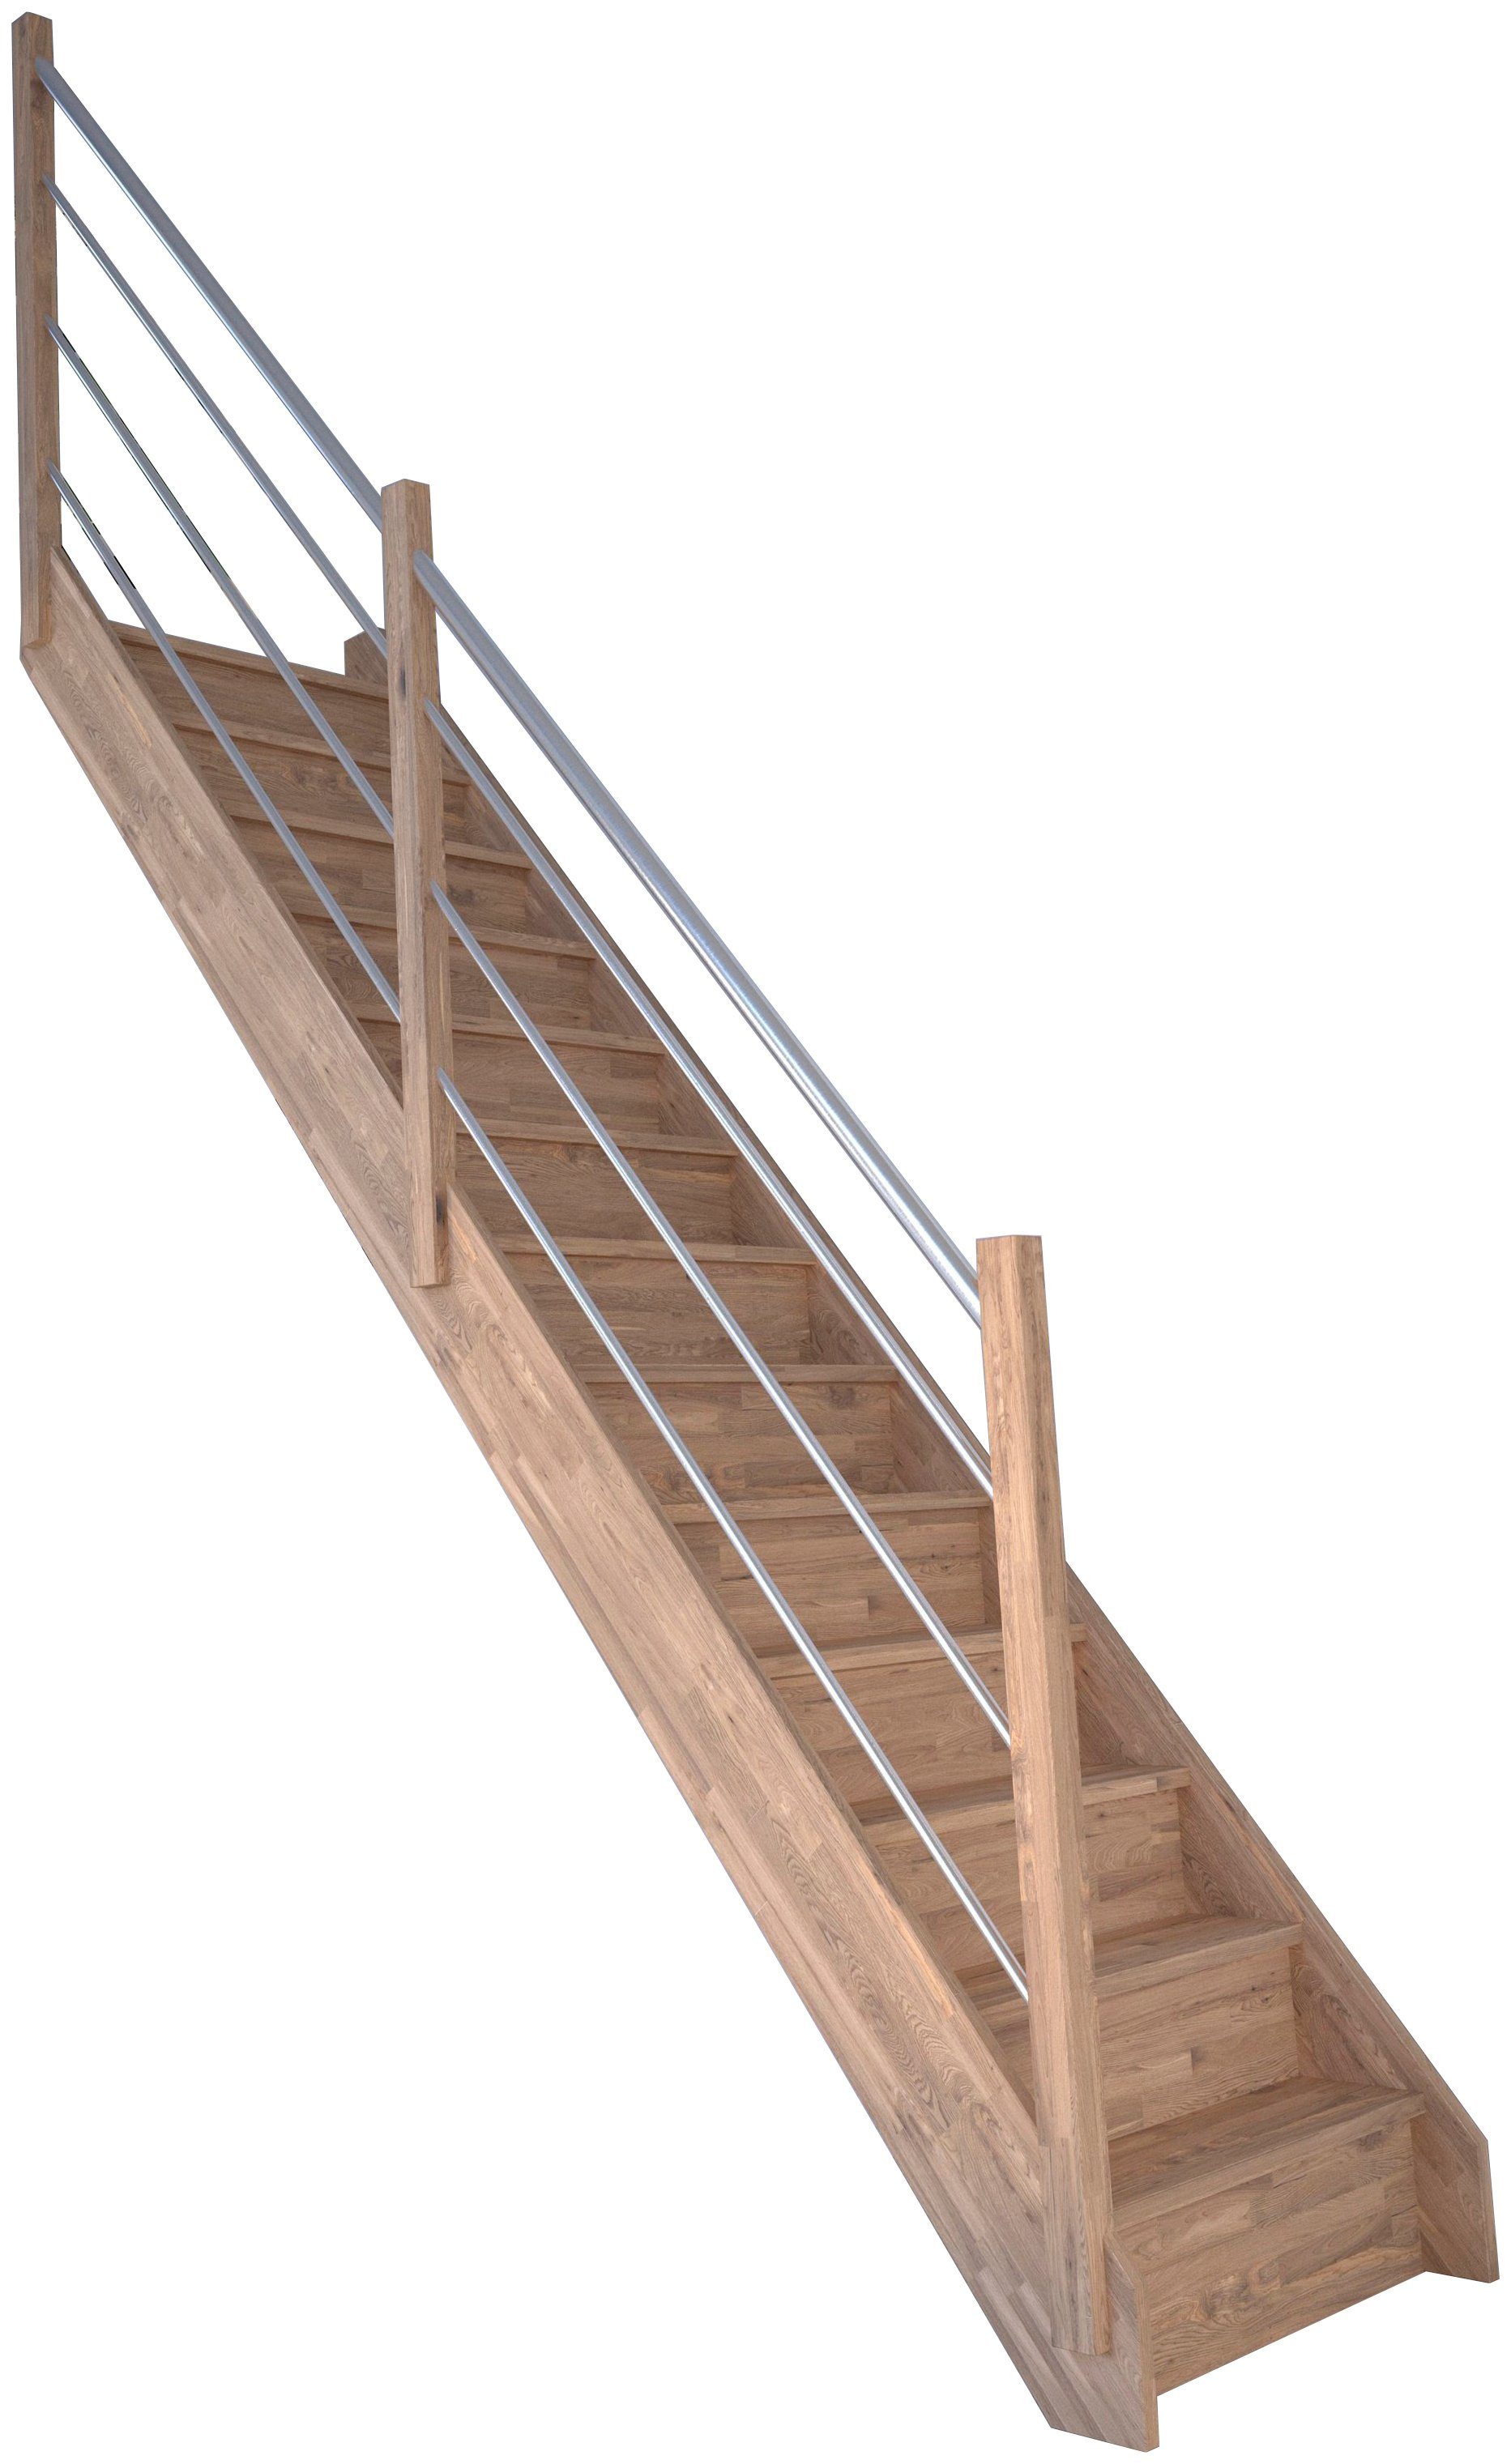 Starwood Raumspartreppe Massivholz Rhodos, Holz-Edelstahl Links, für Geschosshöhen bis 300 cm, Stufen geschlossen, Durchgehende Wangenteile